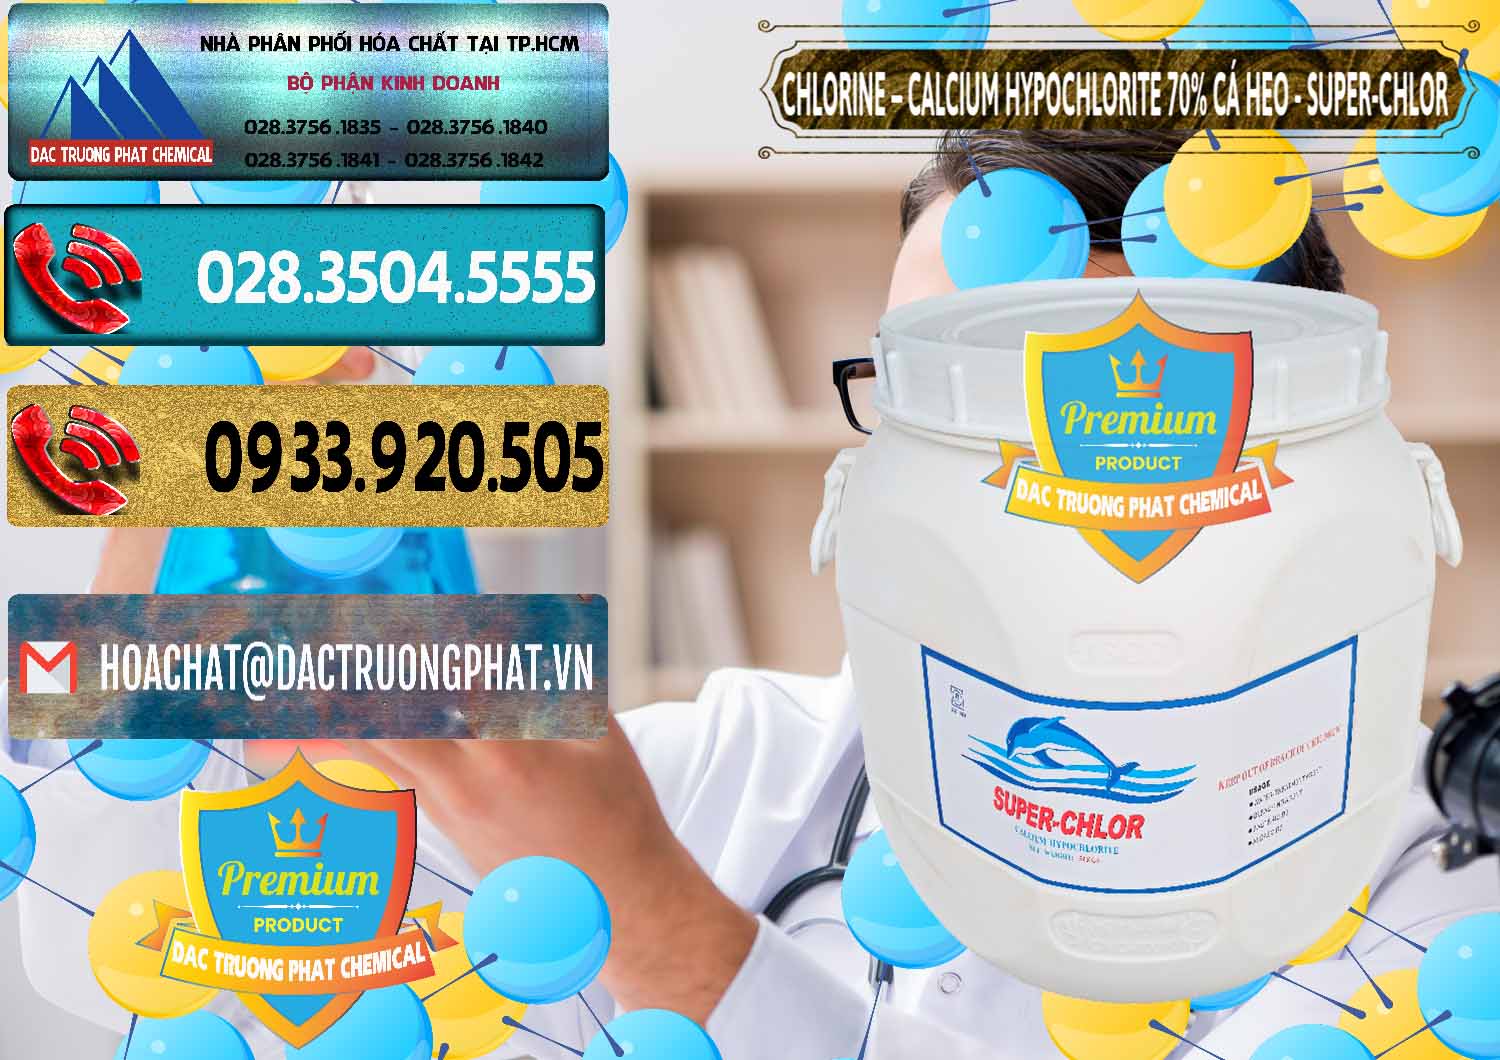 Công ty bán & cung ứng Clorin - Chlorine Cá Heo 70% Super Chlor Trung Quốc China - 0058 - Nhà cung cấp và phân phối hóa chất tại TP.HCM - hoachatdetnhuom.com